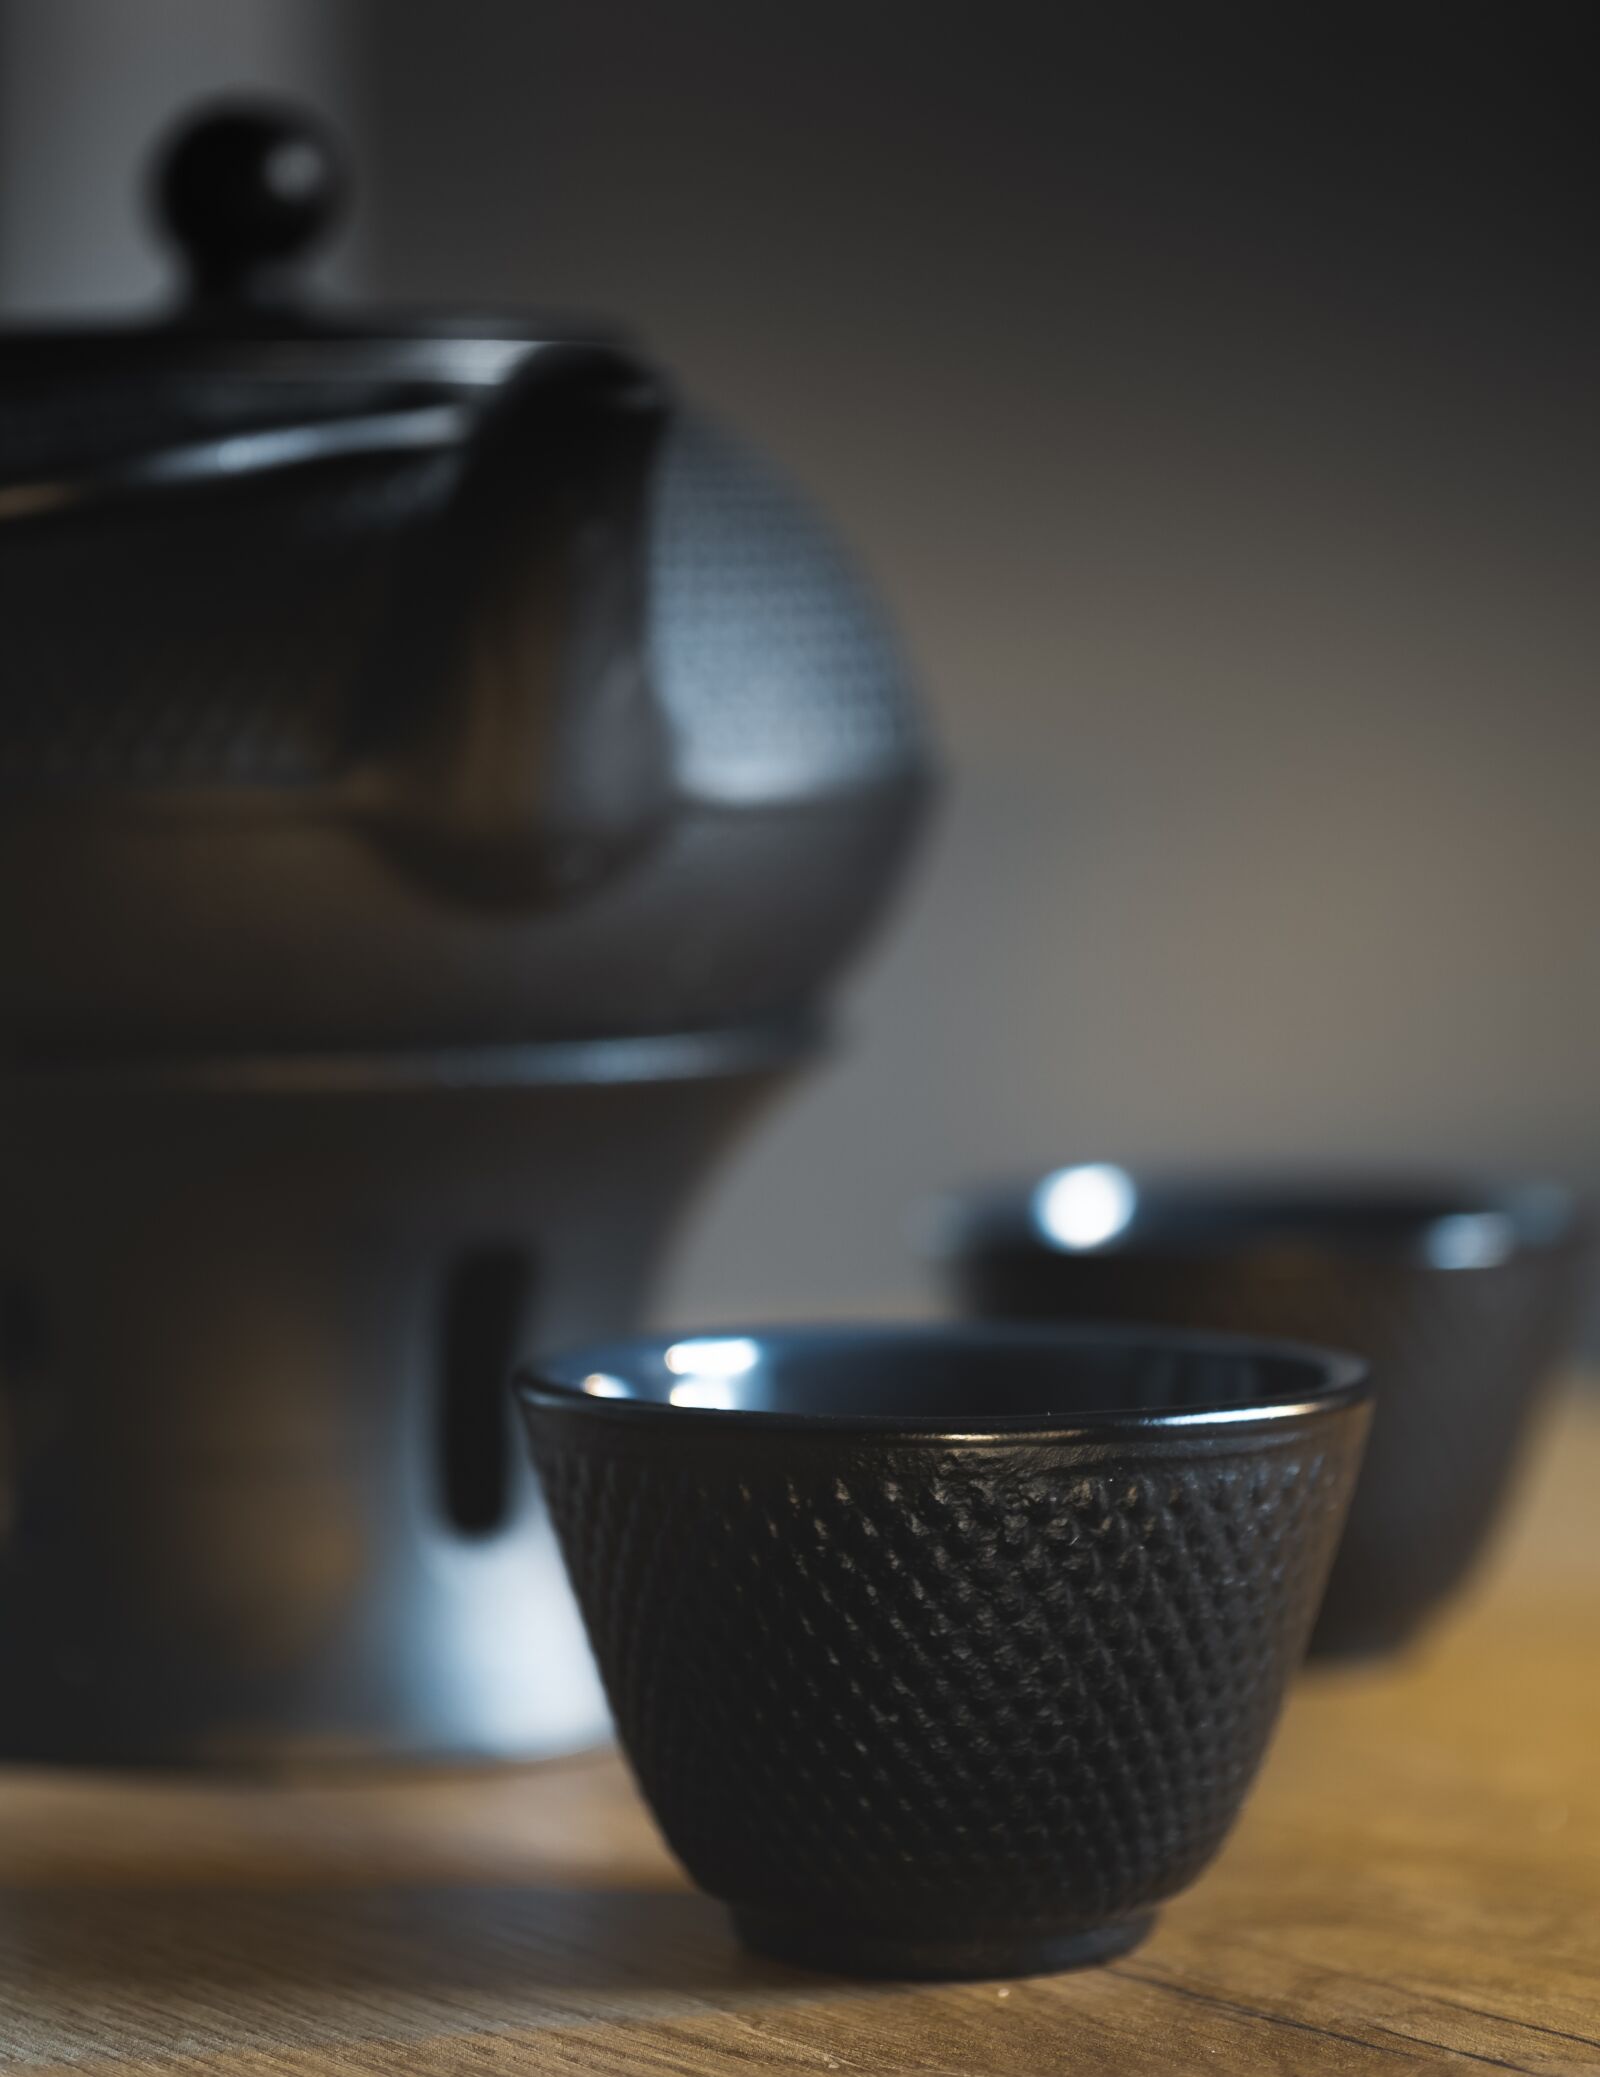 Sony a6000 + E 60mm F2.8 sample photo. Tee, tea kettles, teacup photography